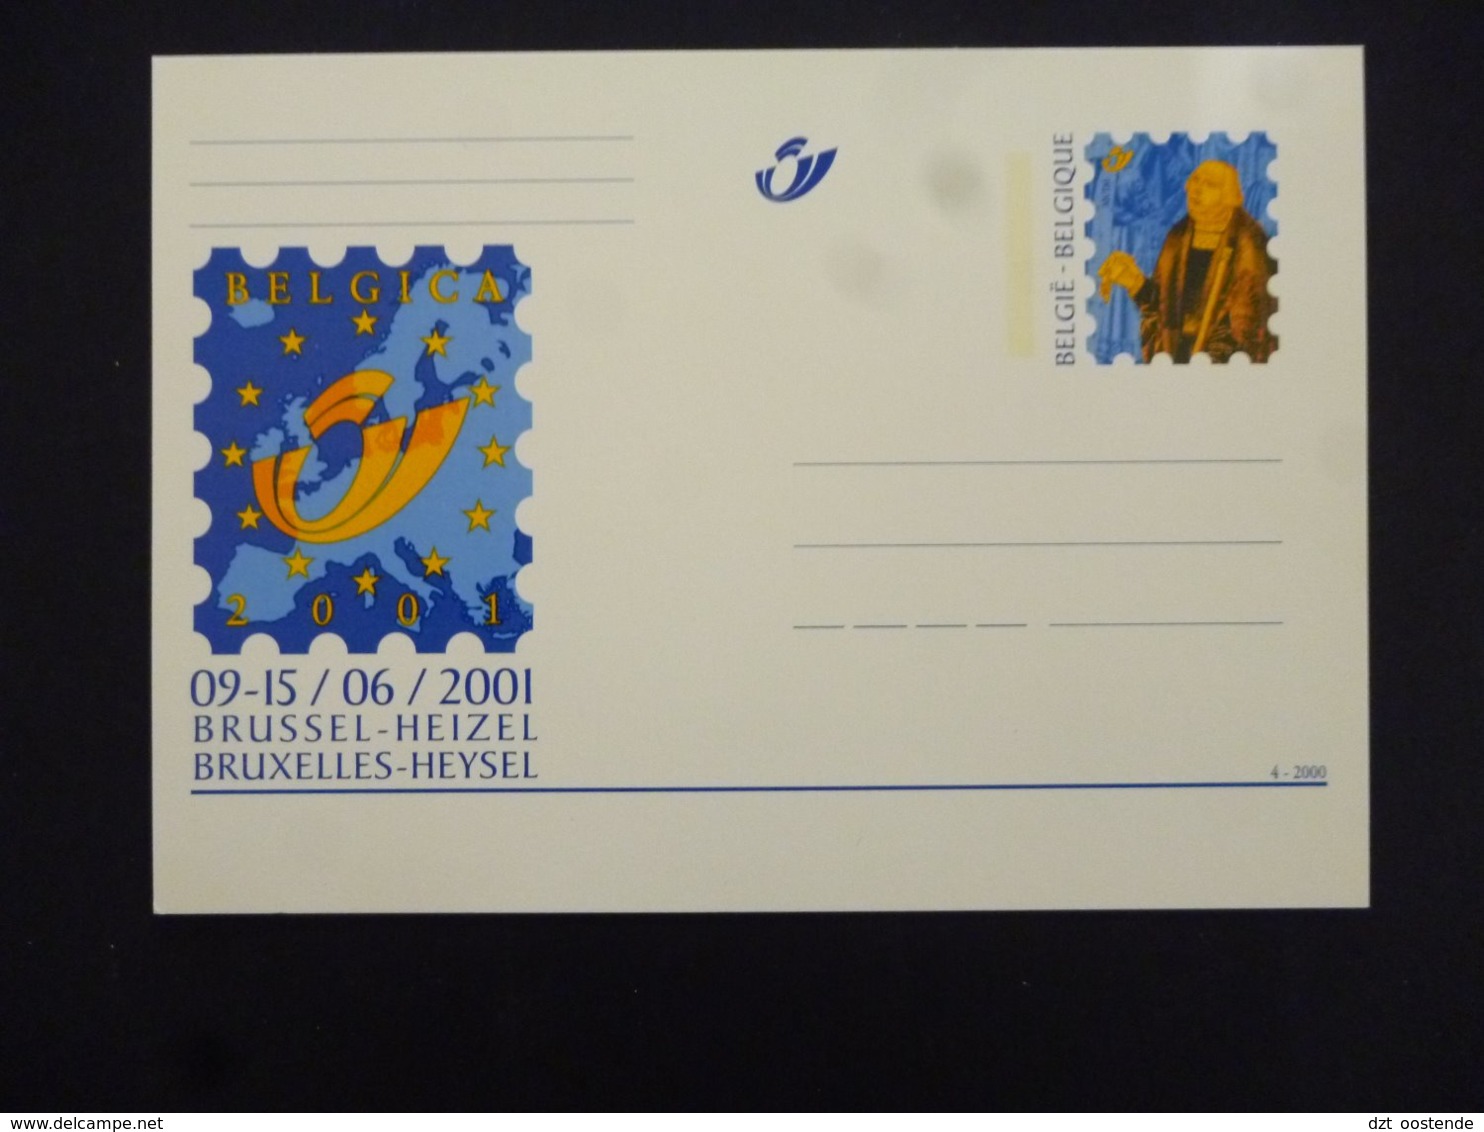 BELGIE BRIEFKAART 85 AAN POSTPRIJS - Illustrated Postcards (1971-2014) [BK]